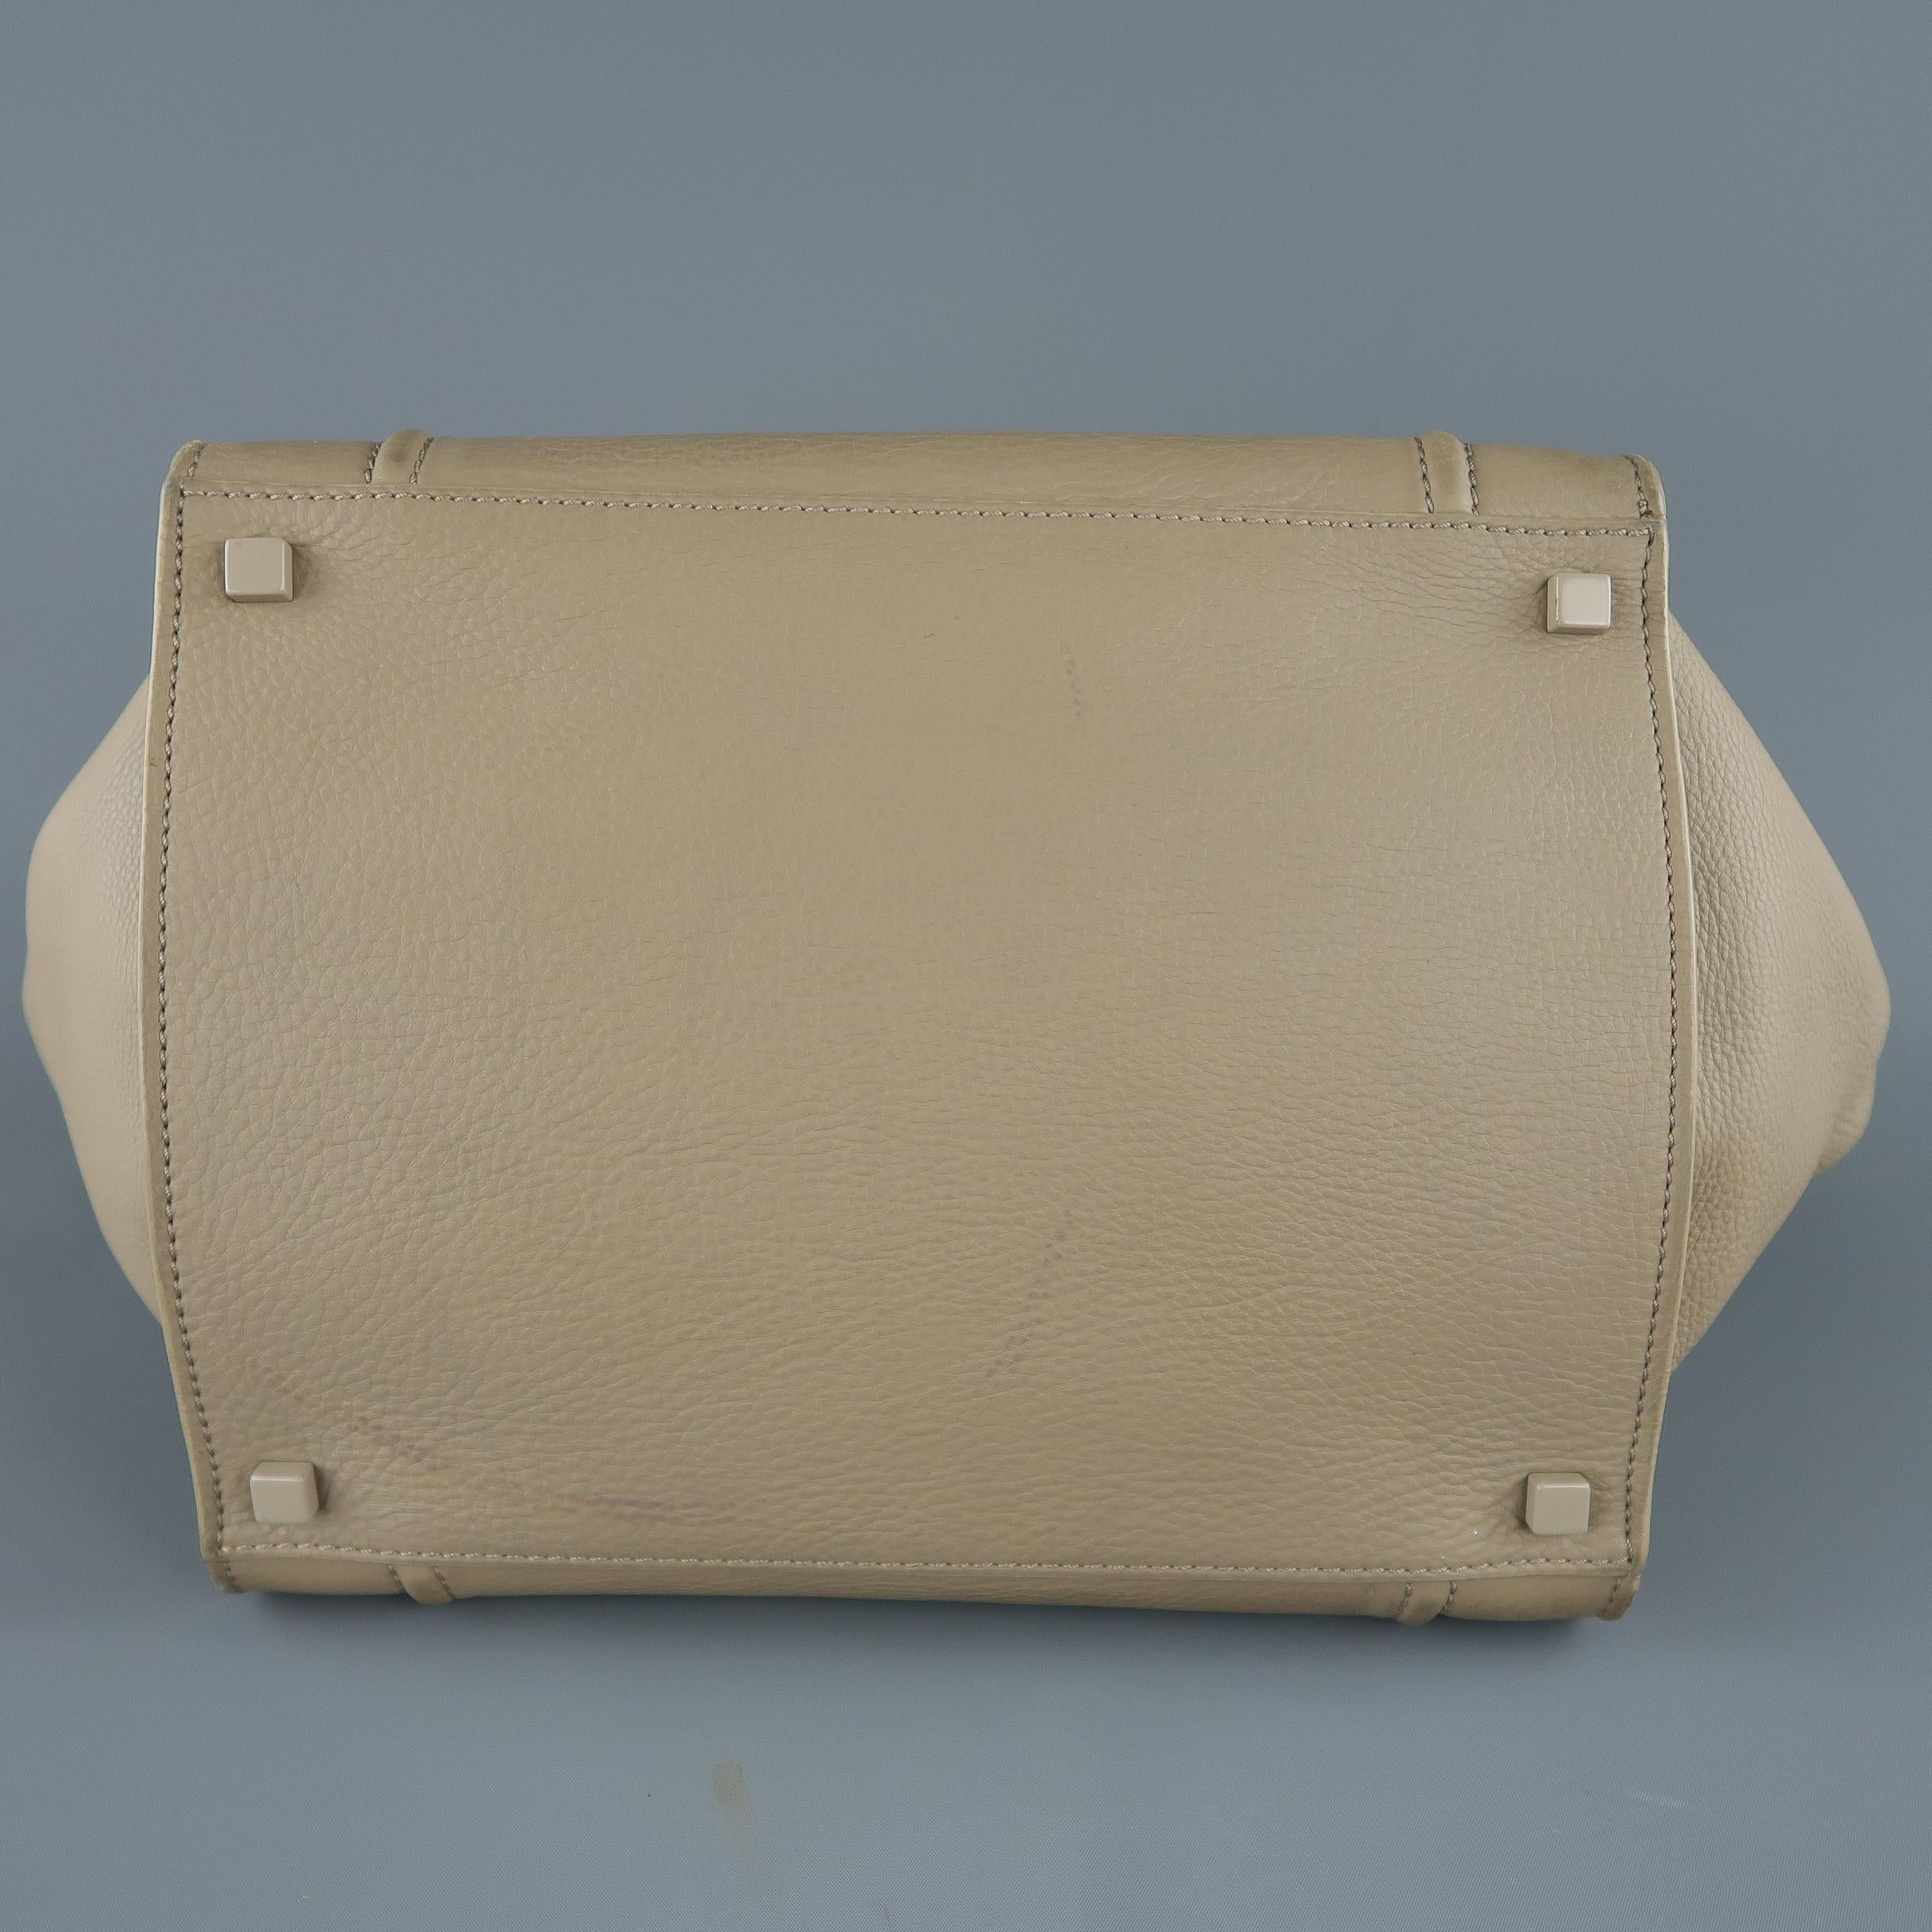 CELINE Taupe Pebble Grain Leather PHANTOM Medium Tote Handbag  9